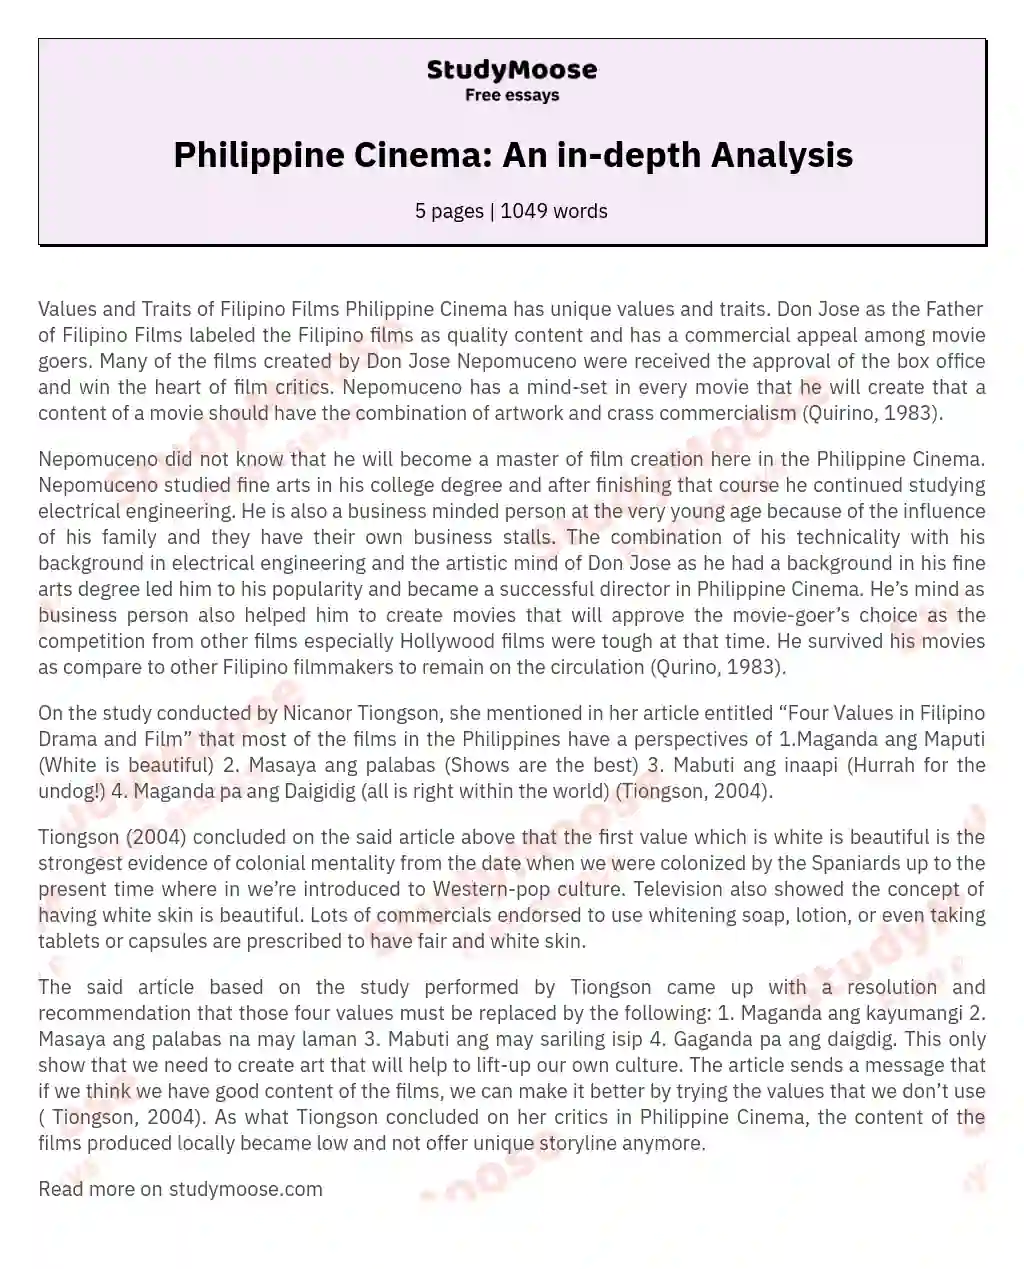 Philippine Cinema: An in-depth Analysis essay